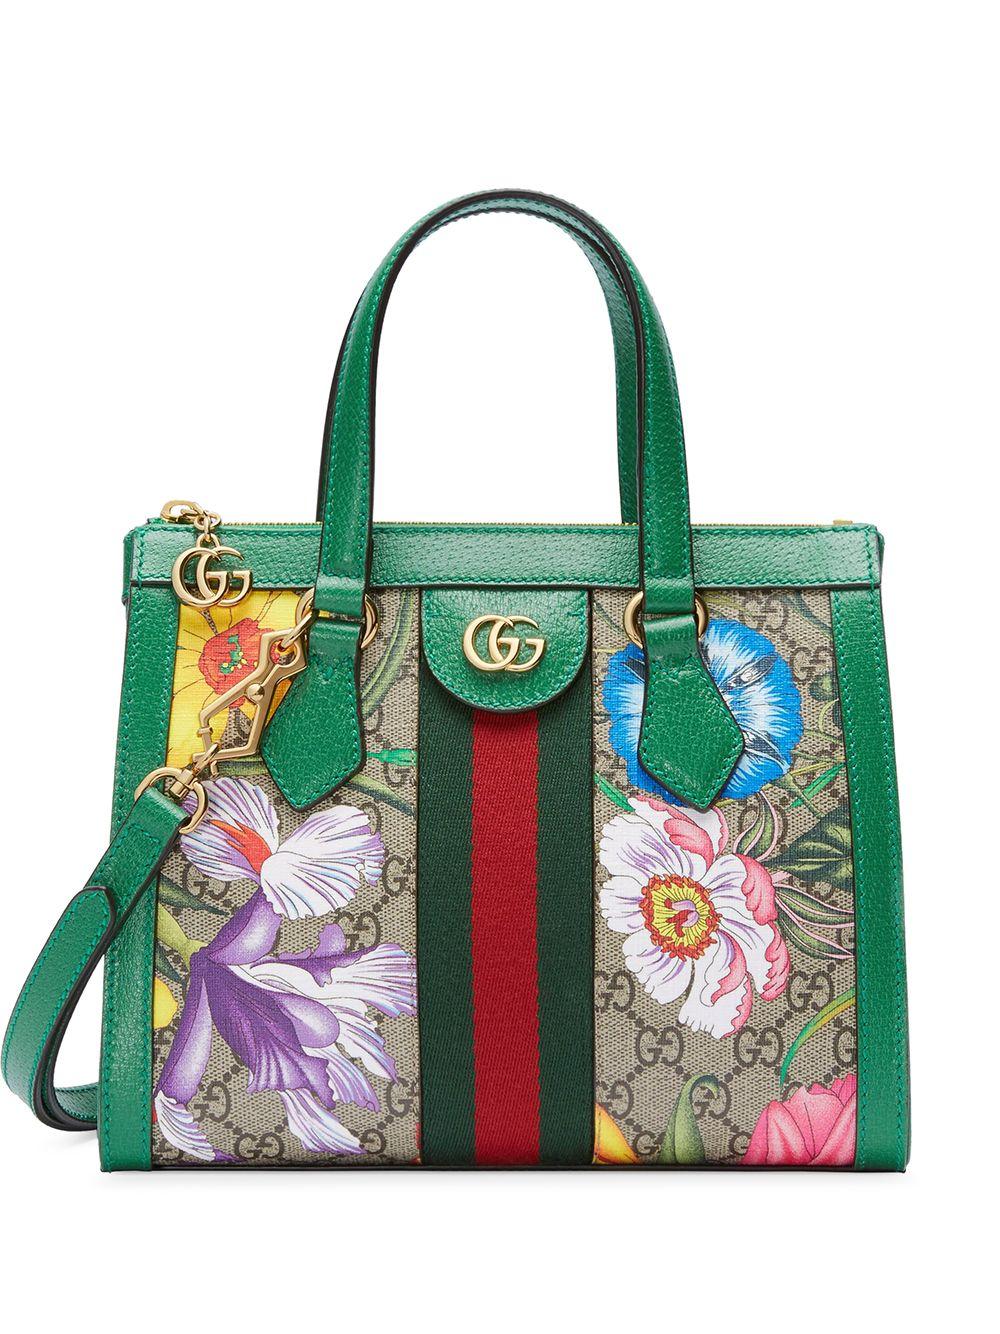 Indsprøjtning forum kål Gucci Ophidia Floral Pattern Tote Bag in Green | Lyst